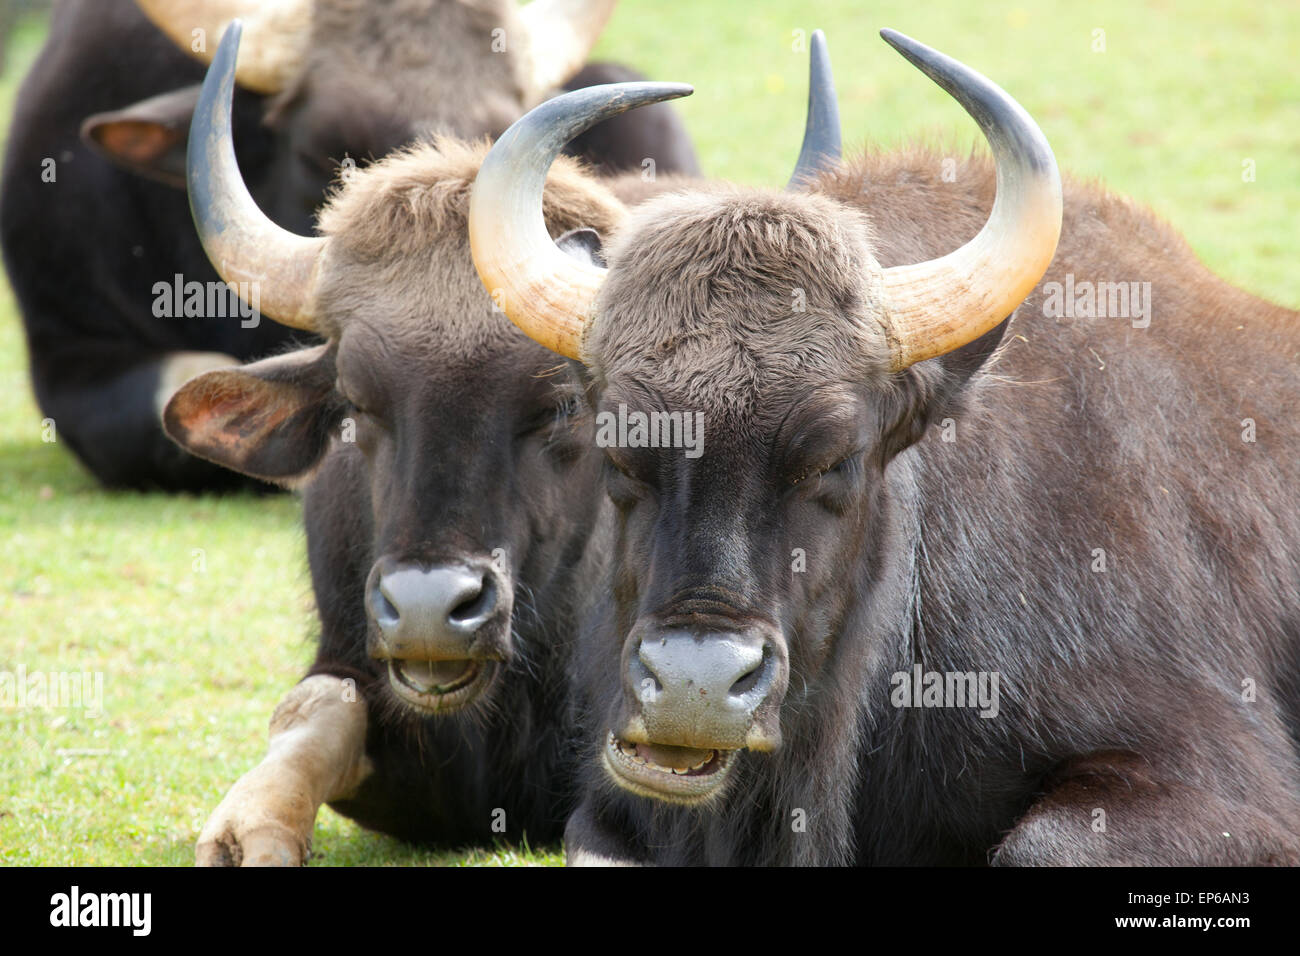 Zwei indische Bison sitzen in einem Feld Stockfoto